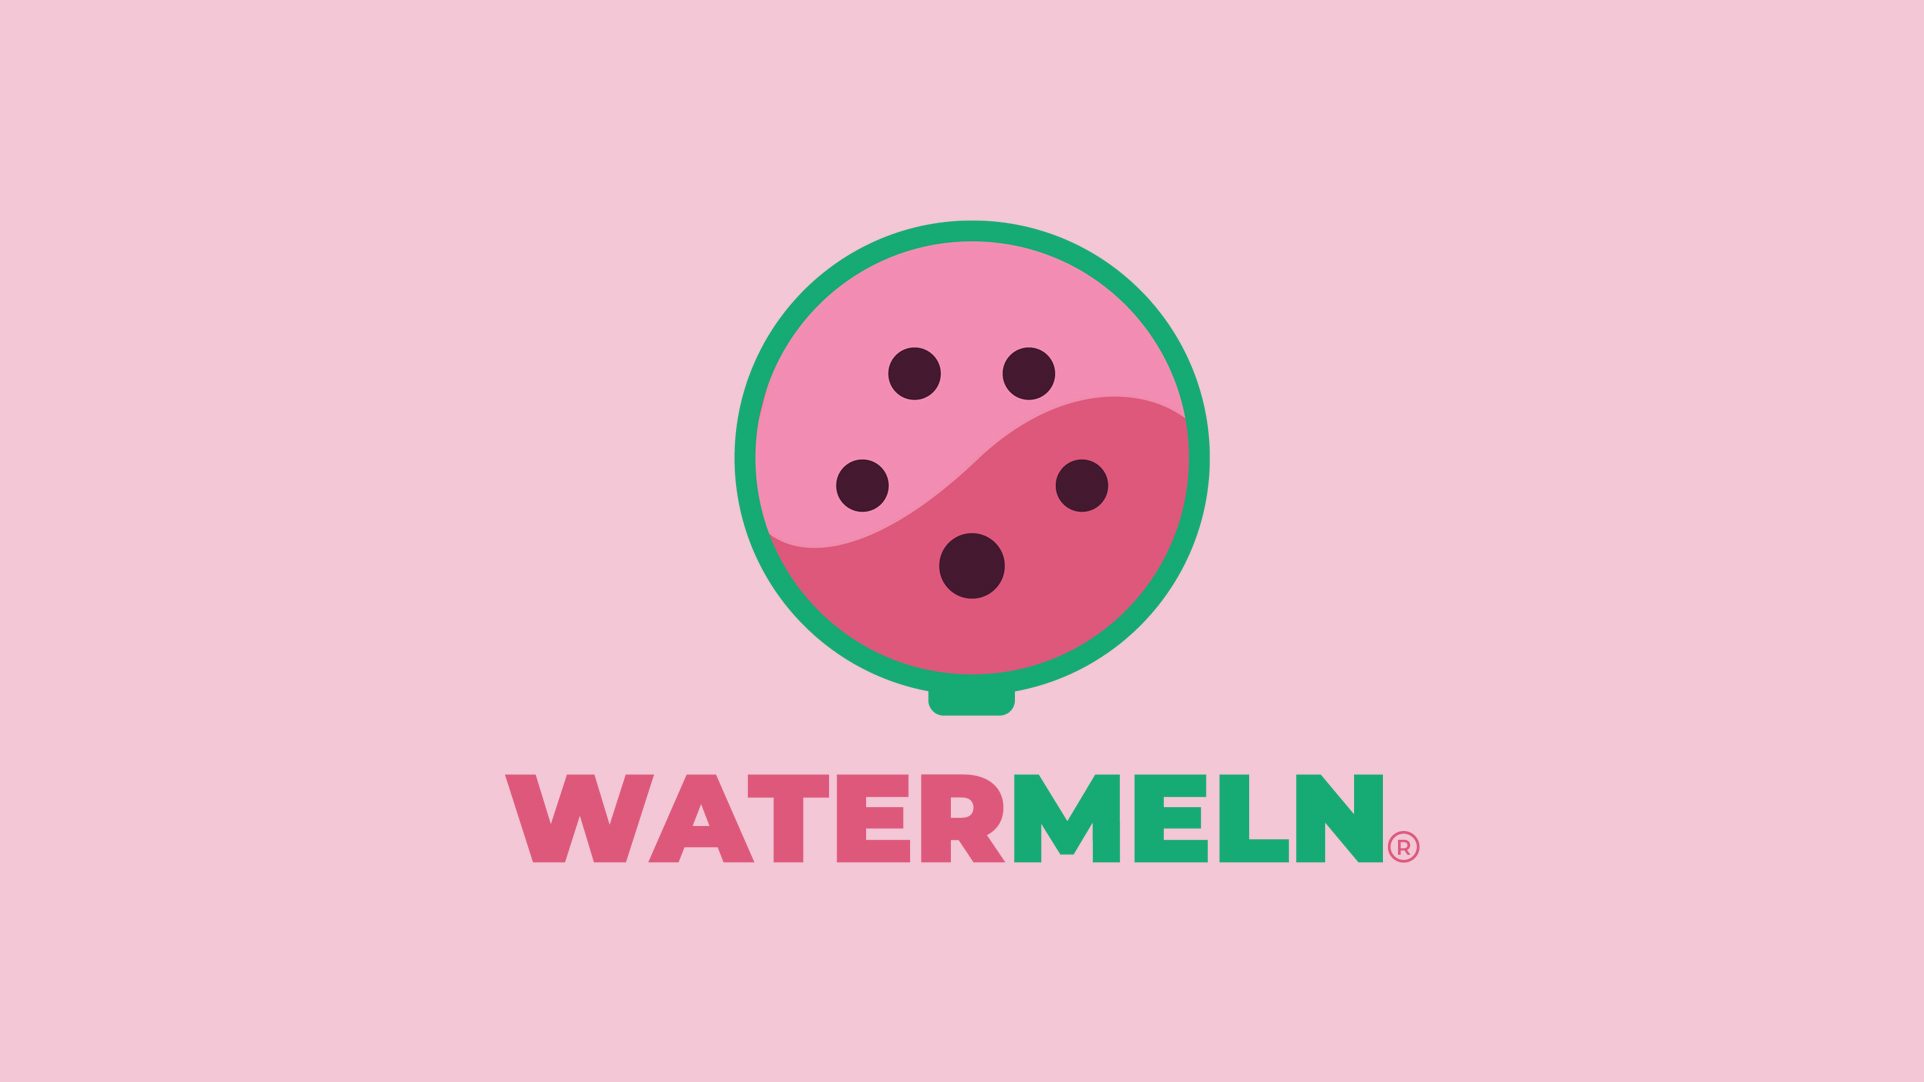 Watermeln - logo on pink background.jpg